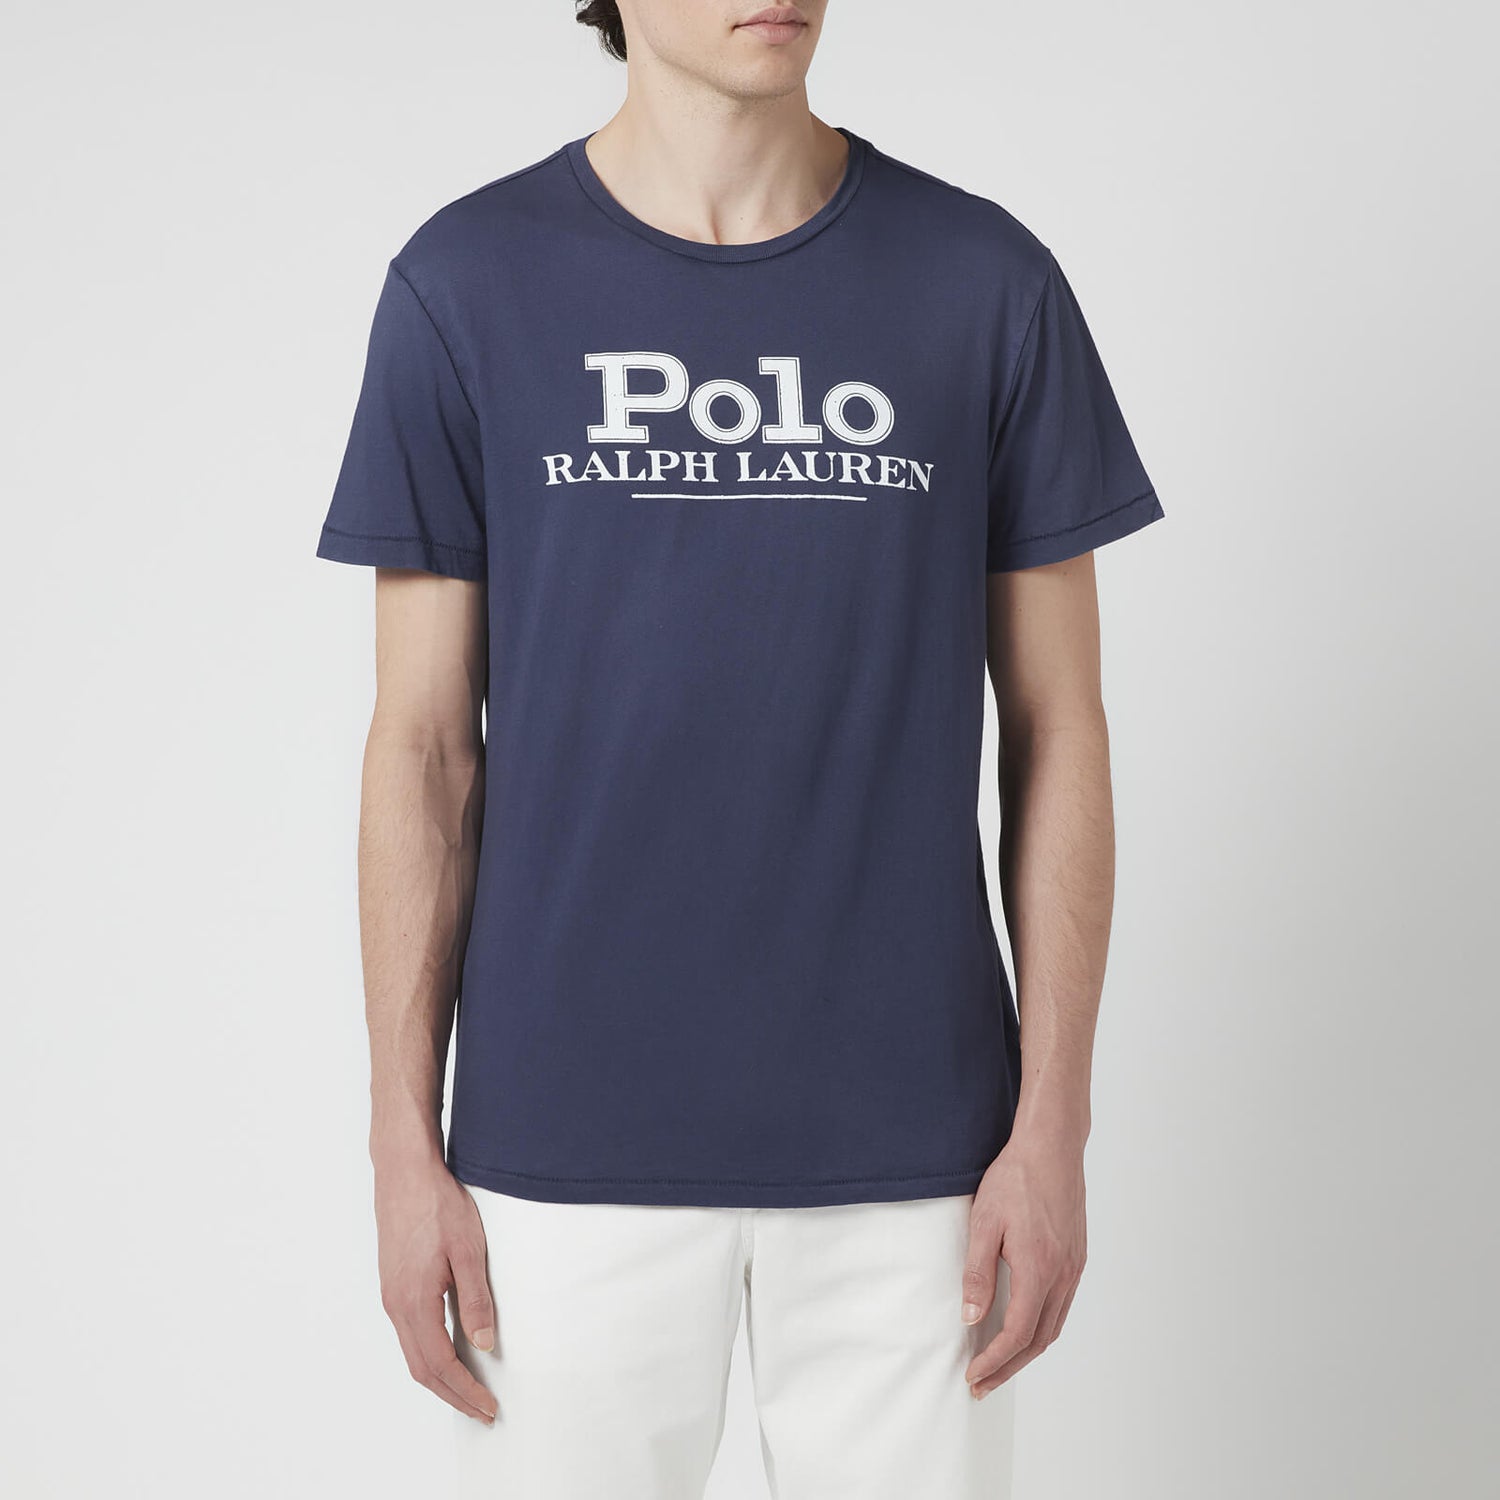 Polo Ralph Lauren Men's Polo Logo T-Shirt - Cruise Navy - S